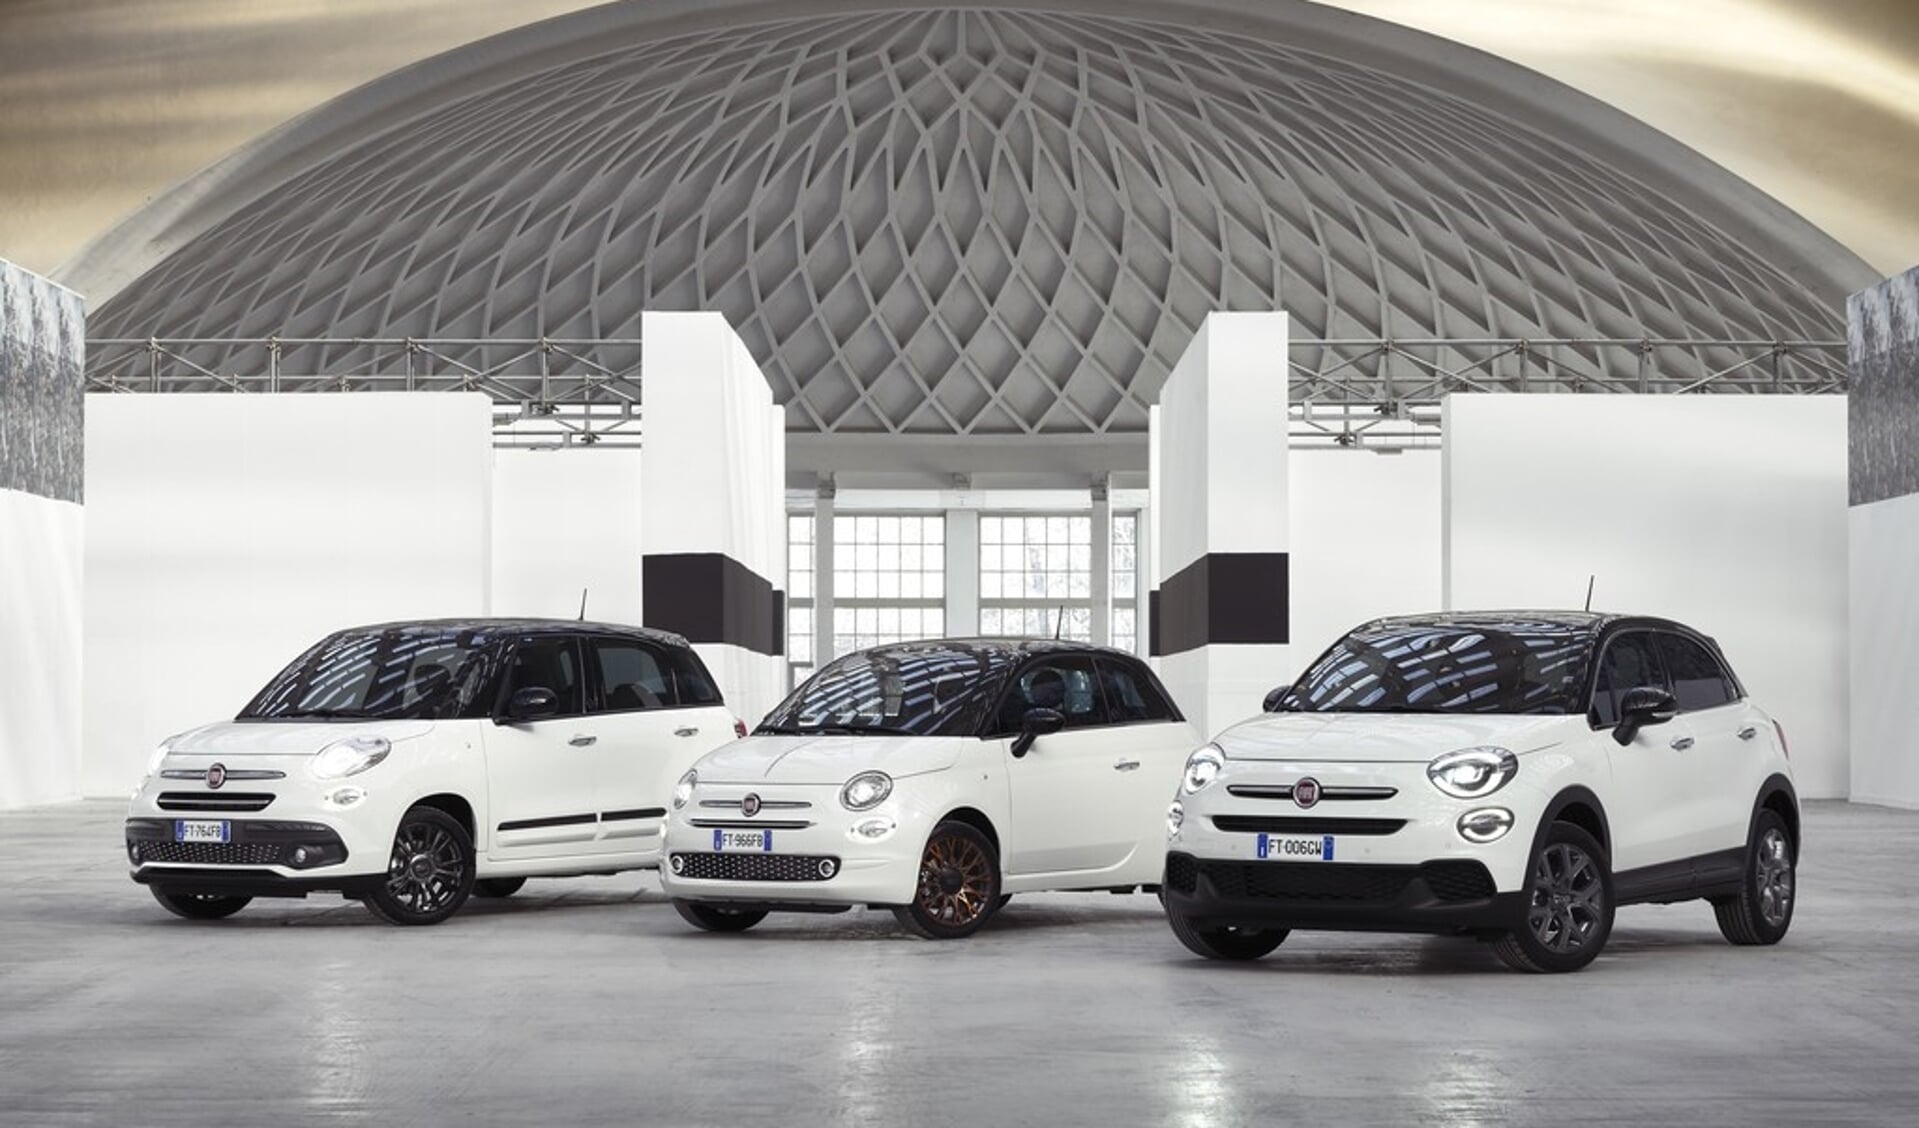 Speciale uitvoeringen 500 modellen bij Fiat Koene.